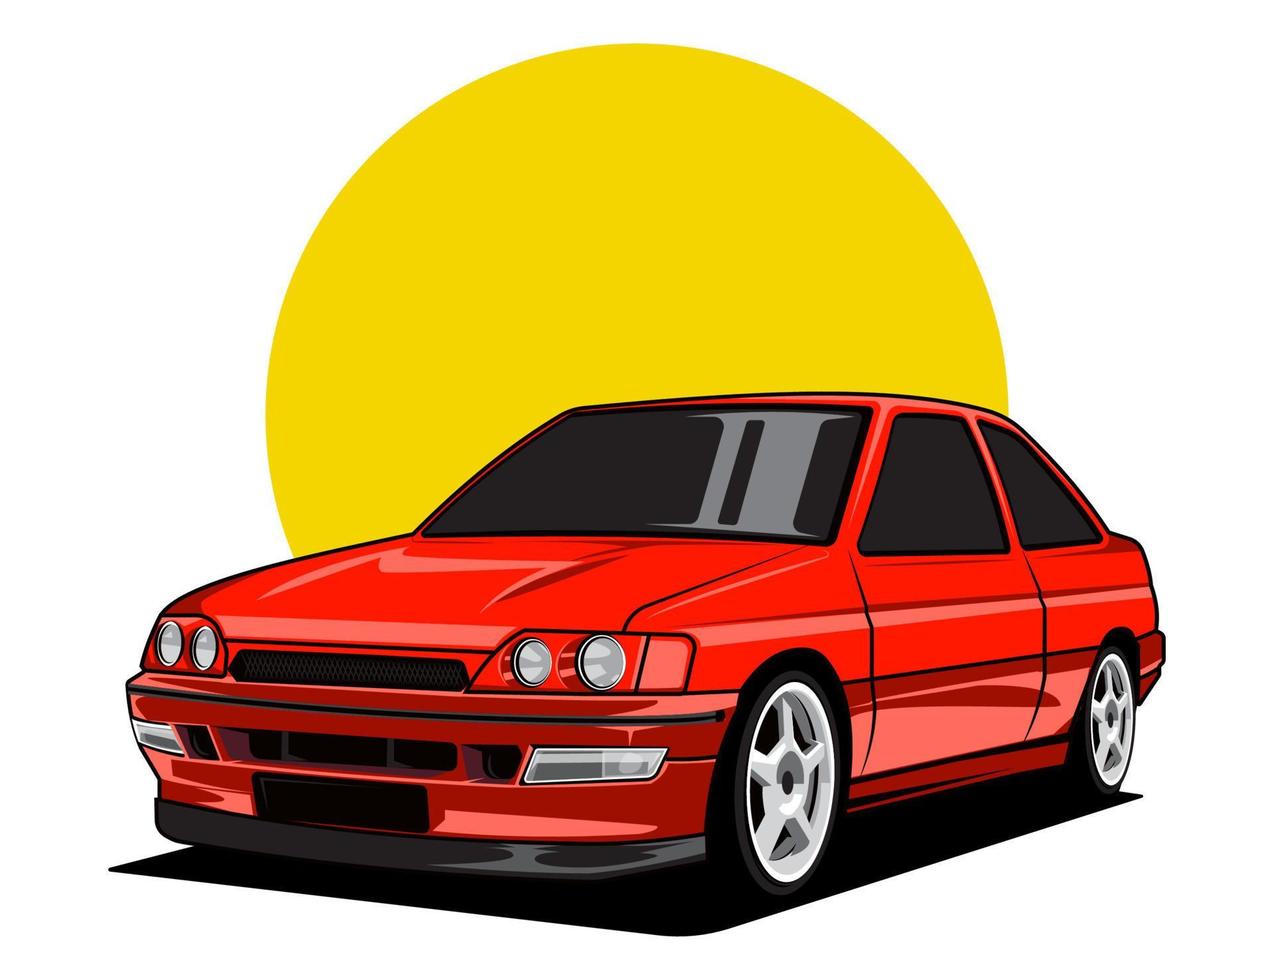 Fabrication de voitures des années 90 en accent rouge pour le graphique de conception d'illustration vectorielle de véhicule vecteur